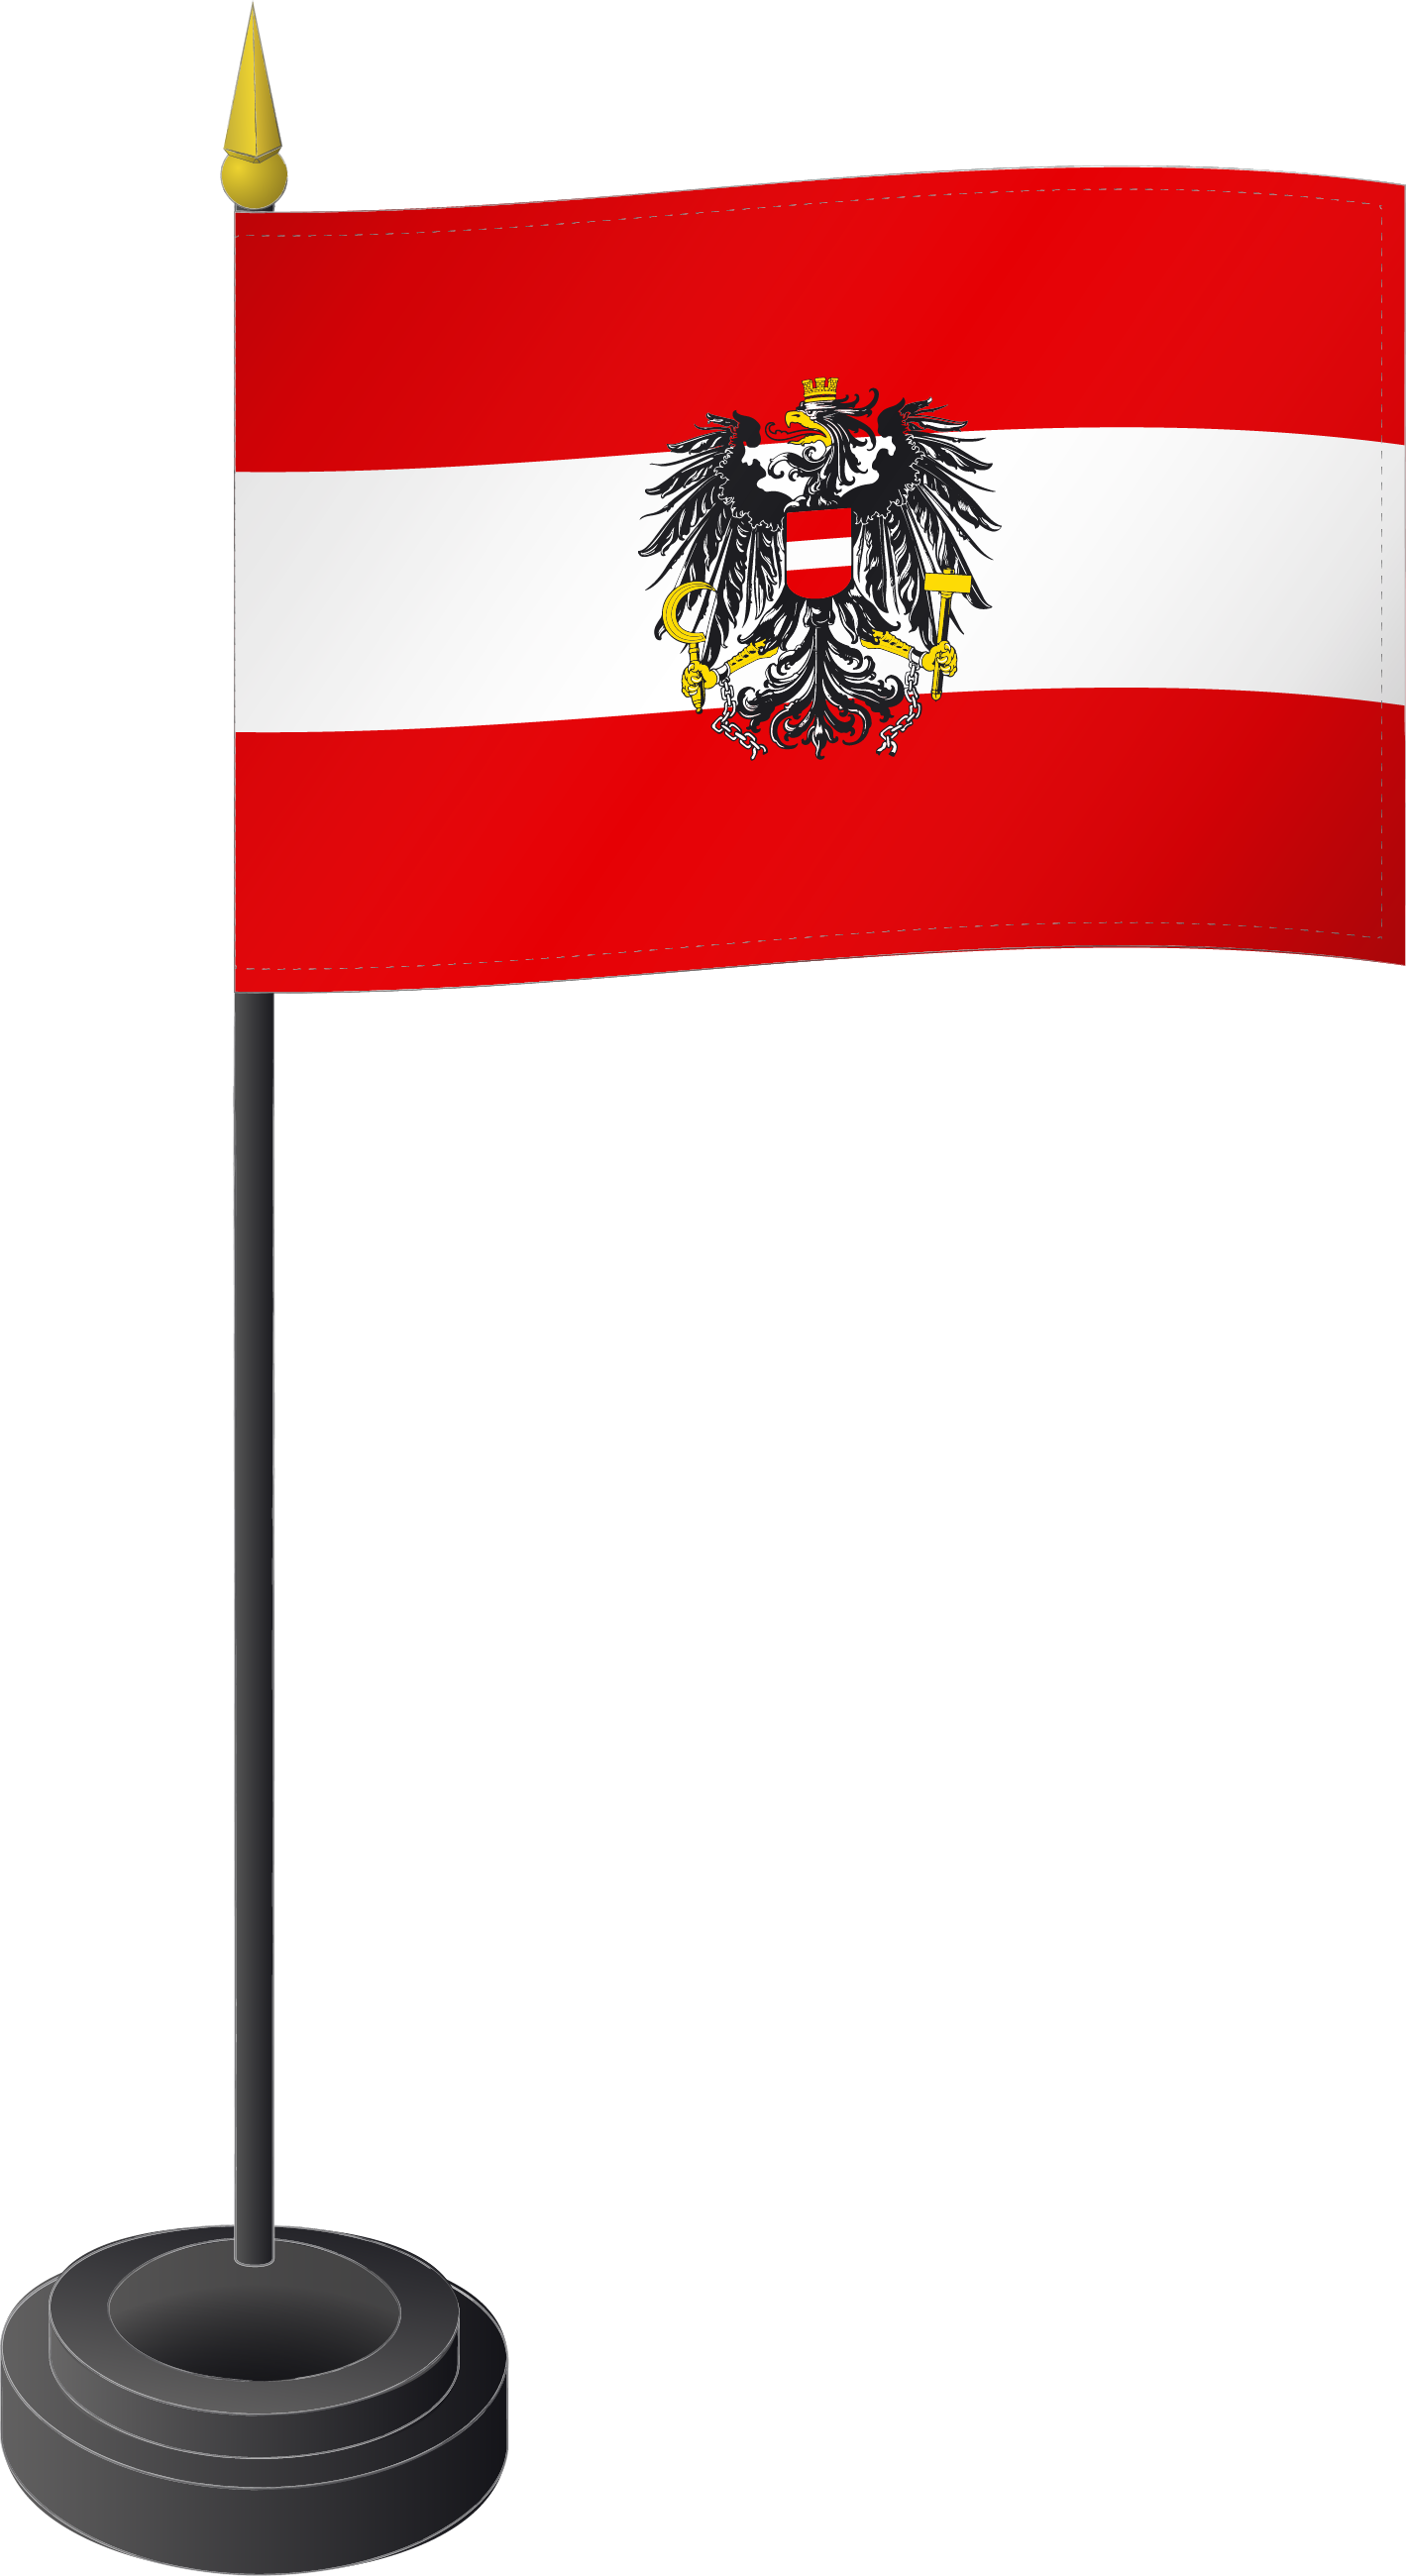 Fahne Tischflagge Österreich mit Adler 